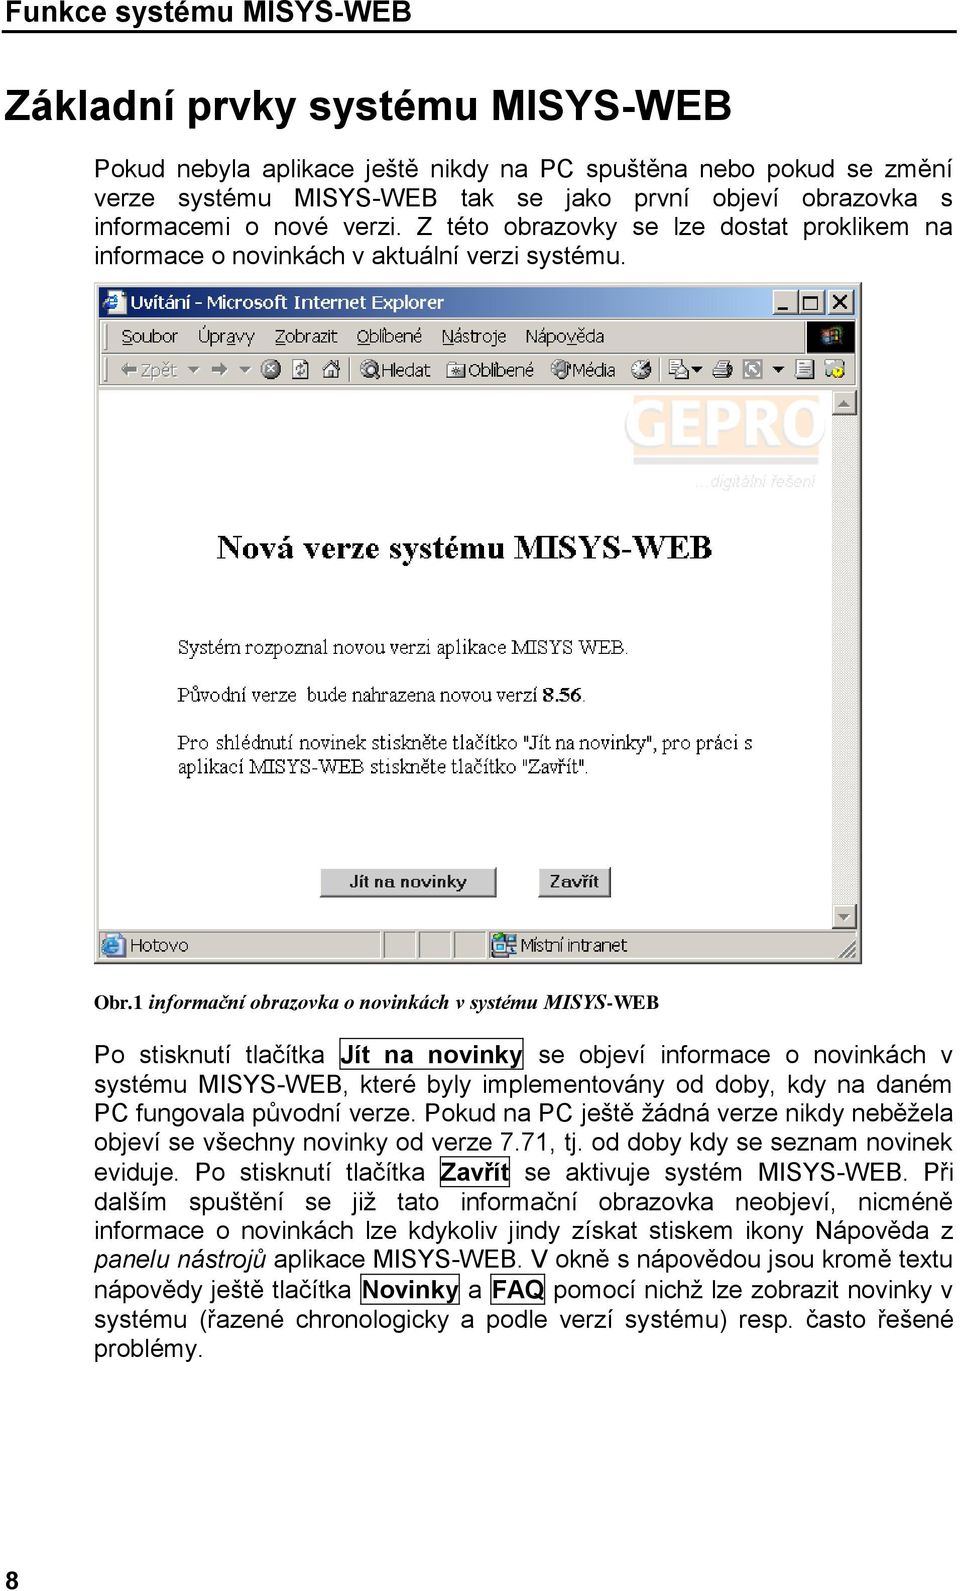 1 informační obrazovka o novinkách v systému MISYS-WEB Po stisknutí tlačítka Jít na novinky se objeví informace o novinkách v systému MISYS-WEB, které byly implementovány od doby, kdy na daném PC